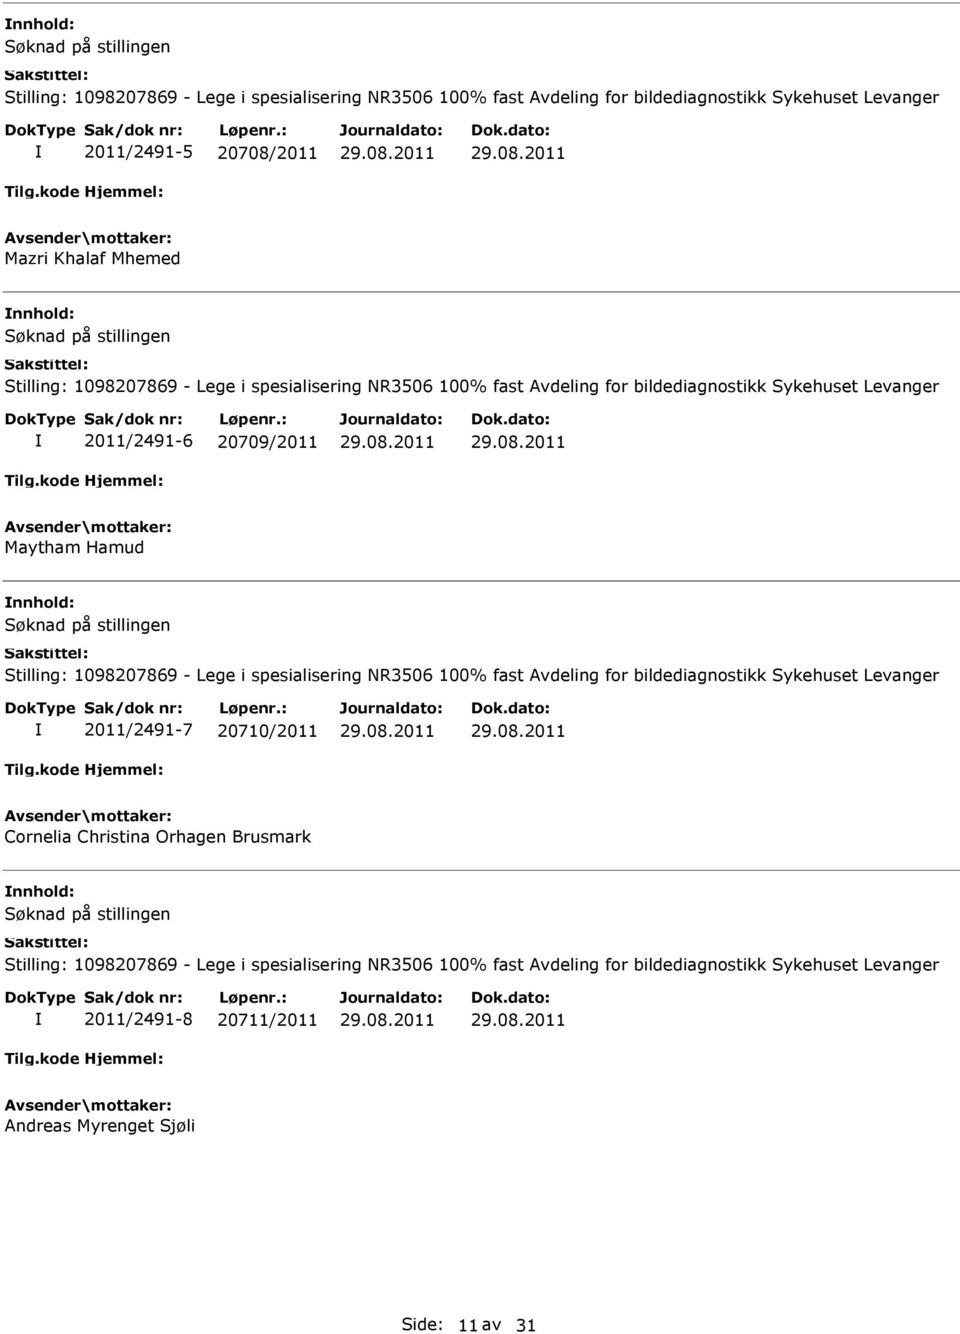 1098207869 - Lege i spesialisering NR3506 100% fast Avdeling for bildediagnostikk Sykehuset Levanger 2011/2491-7 20710/2011 Cornelia Christina Orhagen Brusmark